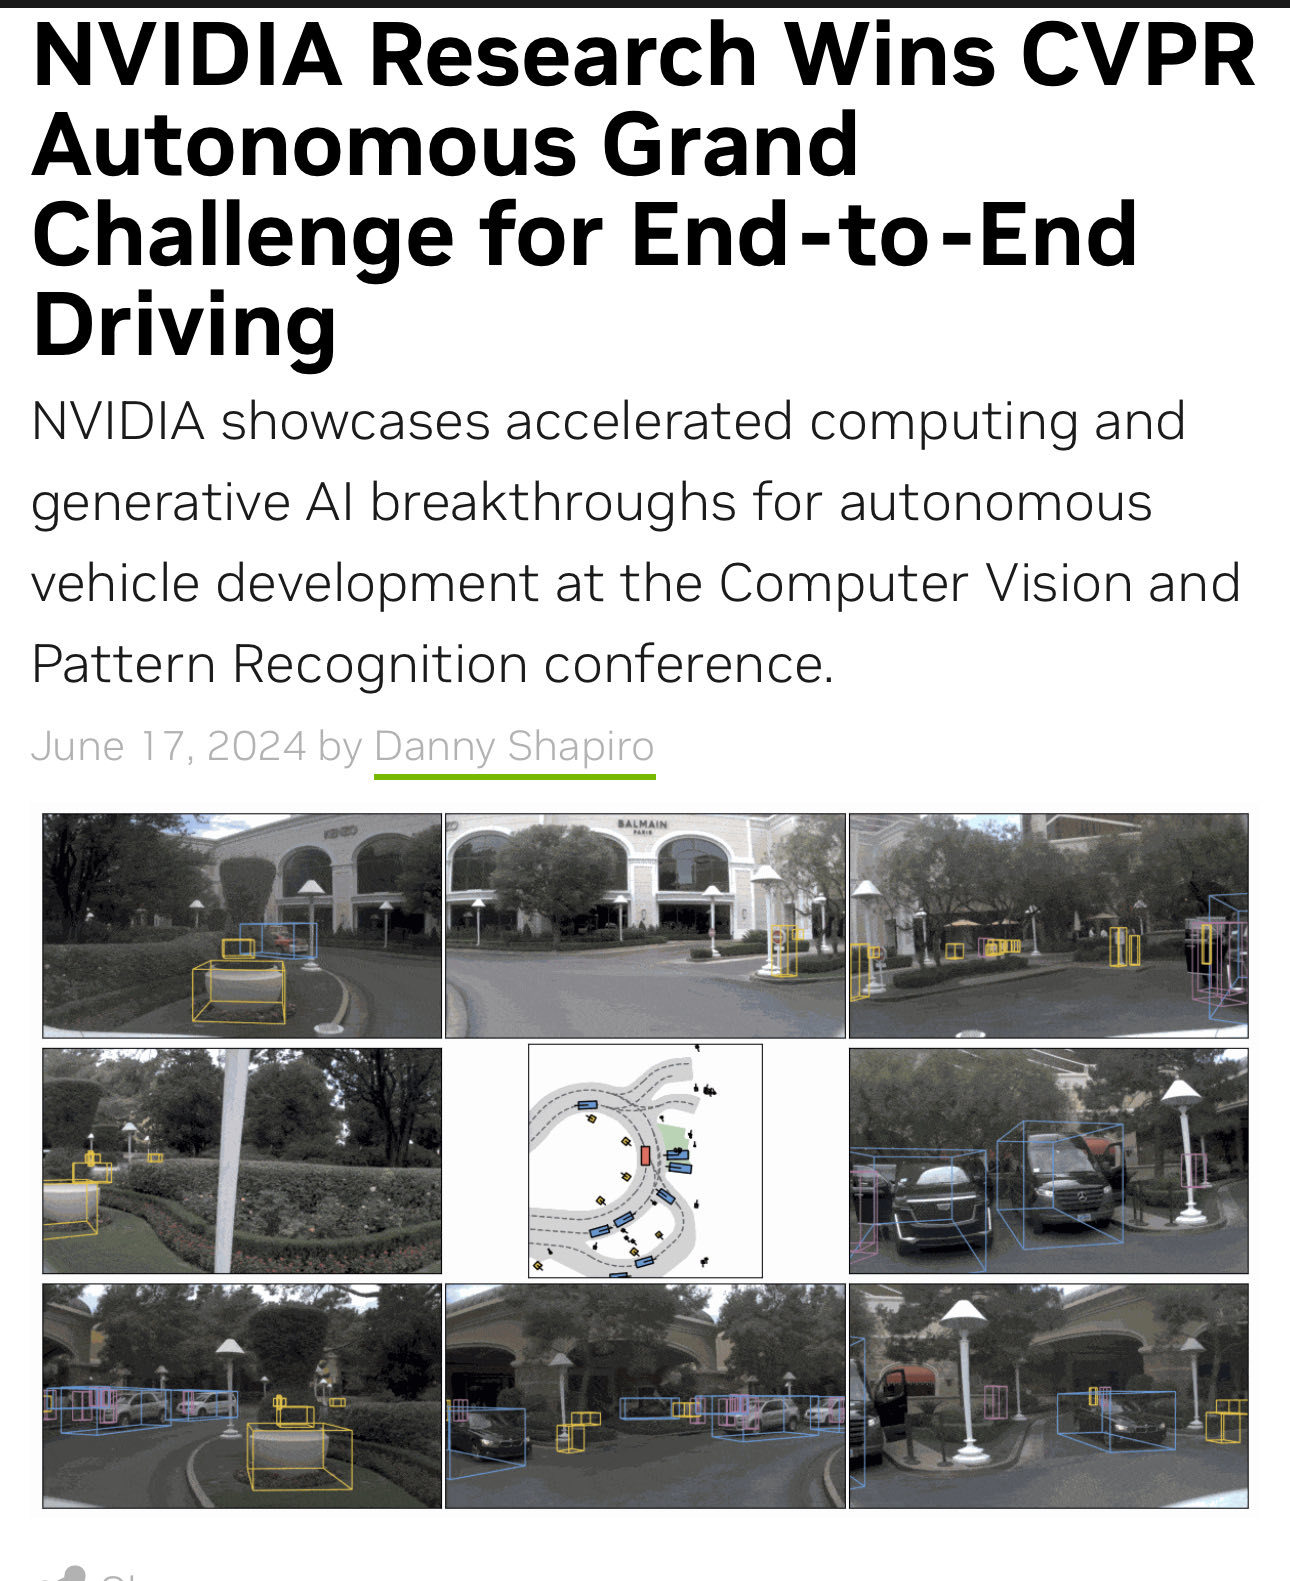 $エヌビディア (NVDA.US)$ [リンク: エヌビディアの研究が、エンド・トゥ・エンドの自動運転のCVPR Autonomous Grand Challengeに勝利しました。]